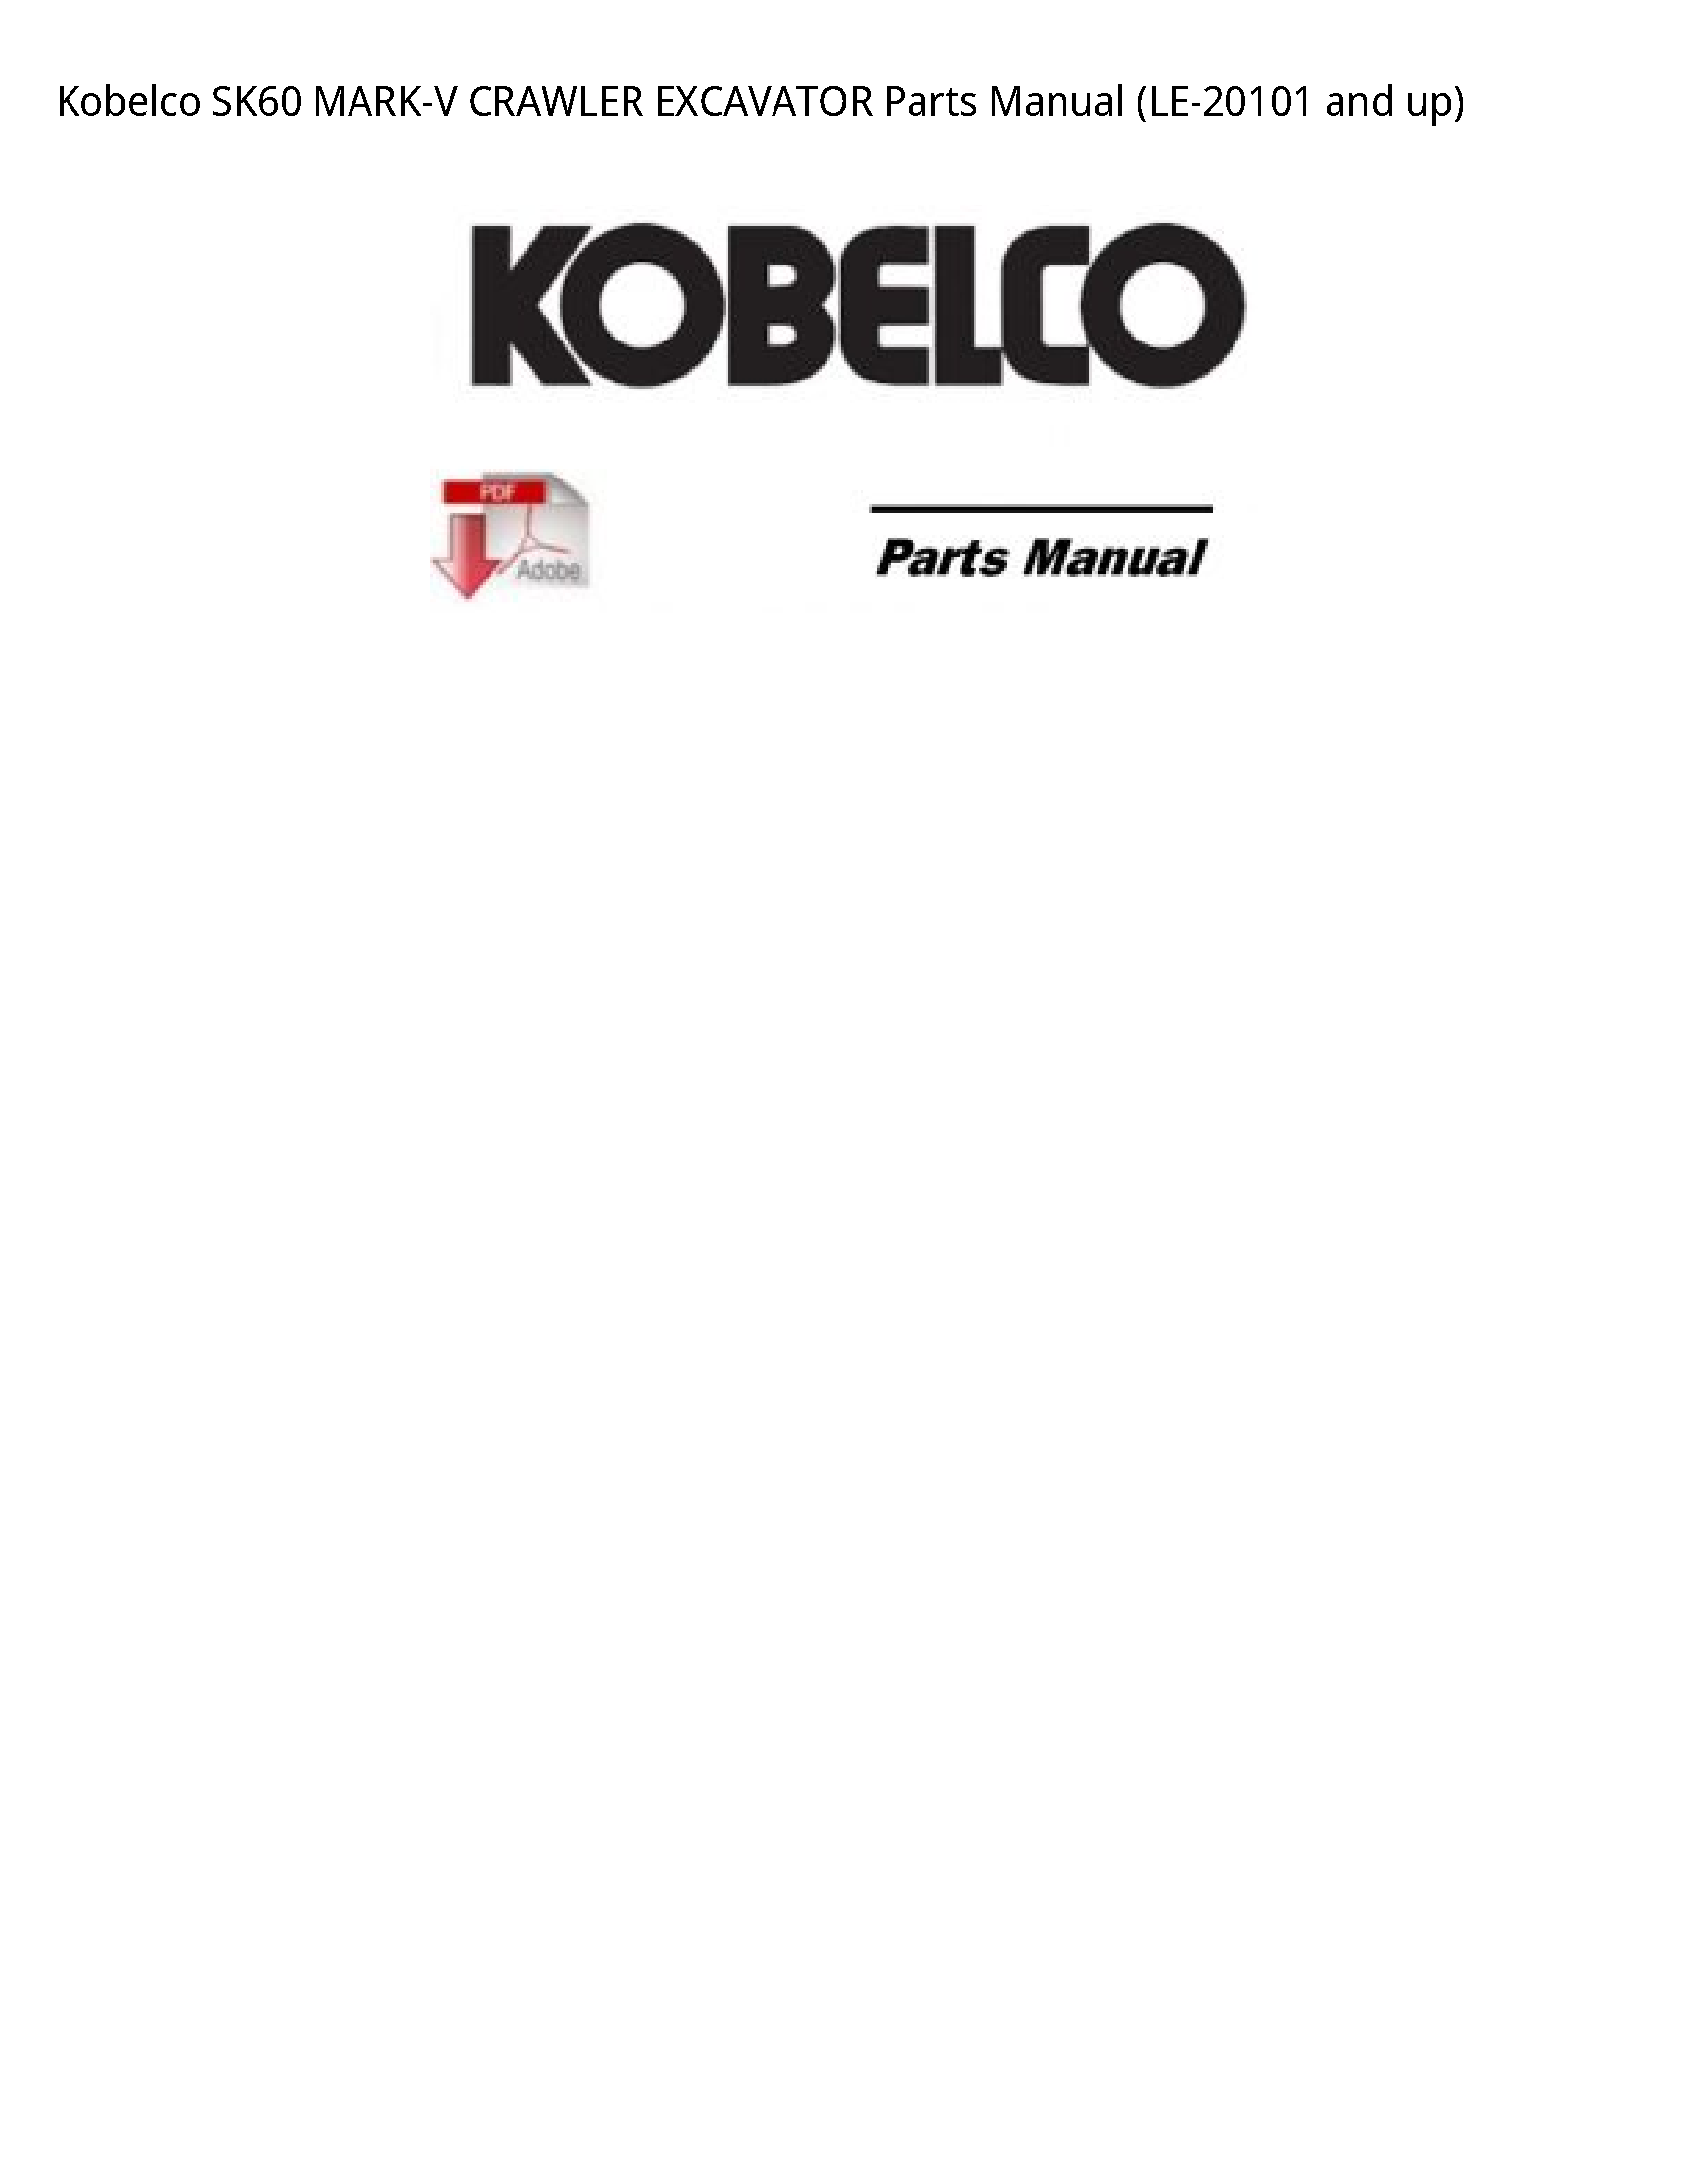 Kobelco SK60 MARK-V CRAWLER EXCAVATOR Parts manual